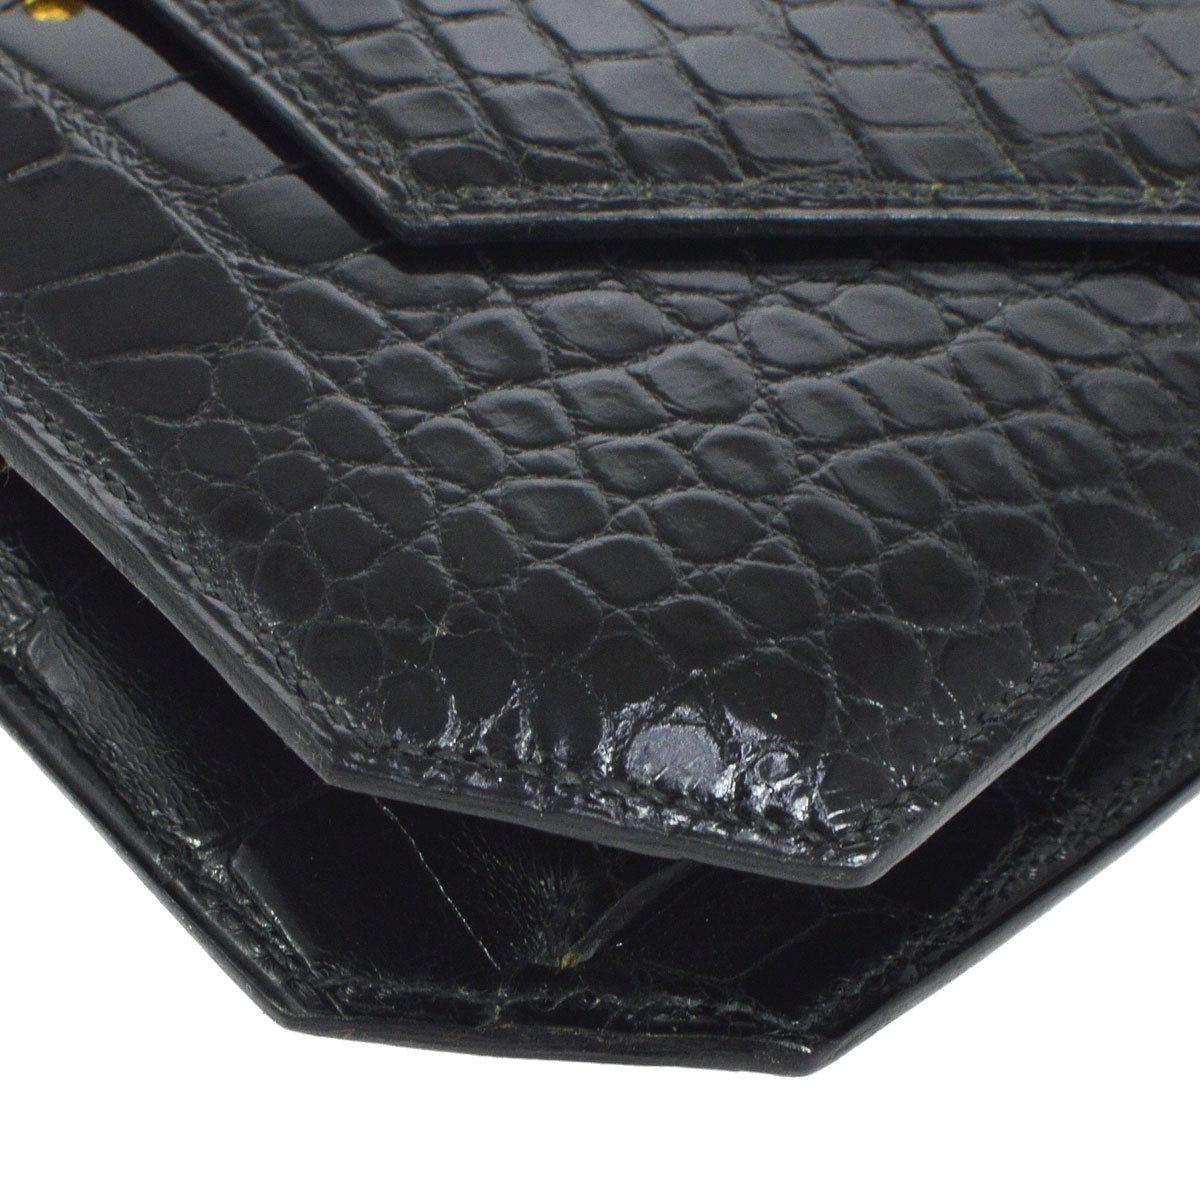 Hermes Black Alligator Leather Gold Tone Emblem Evening Clutch Flap Bag 1